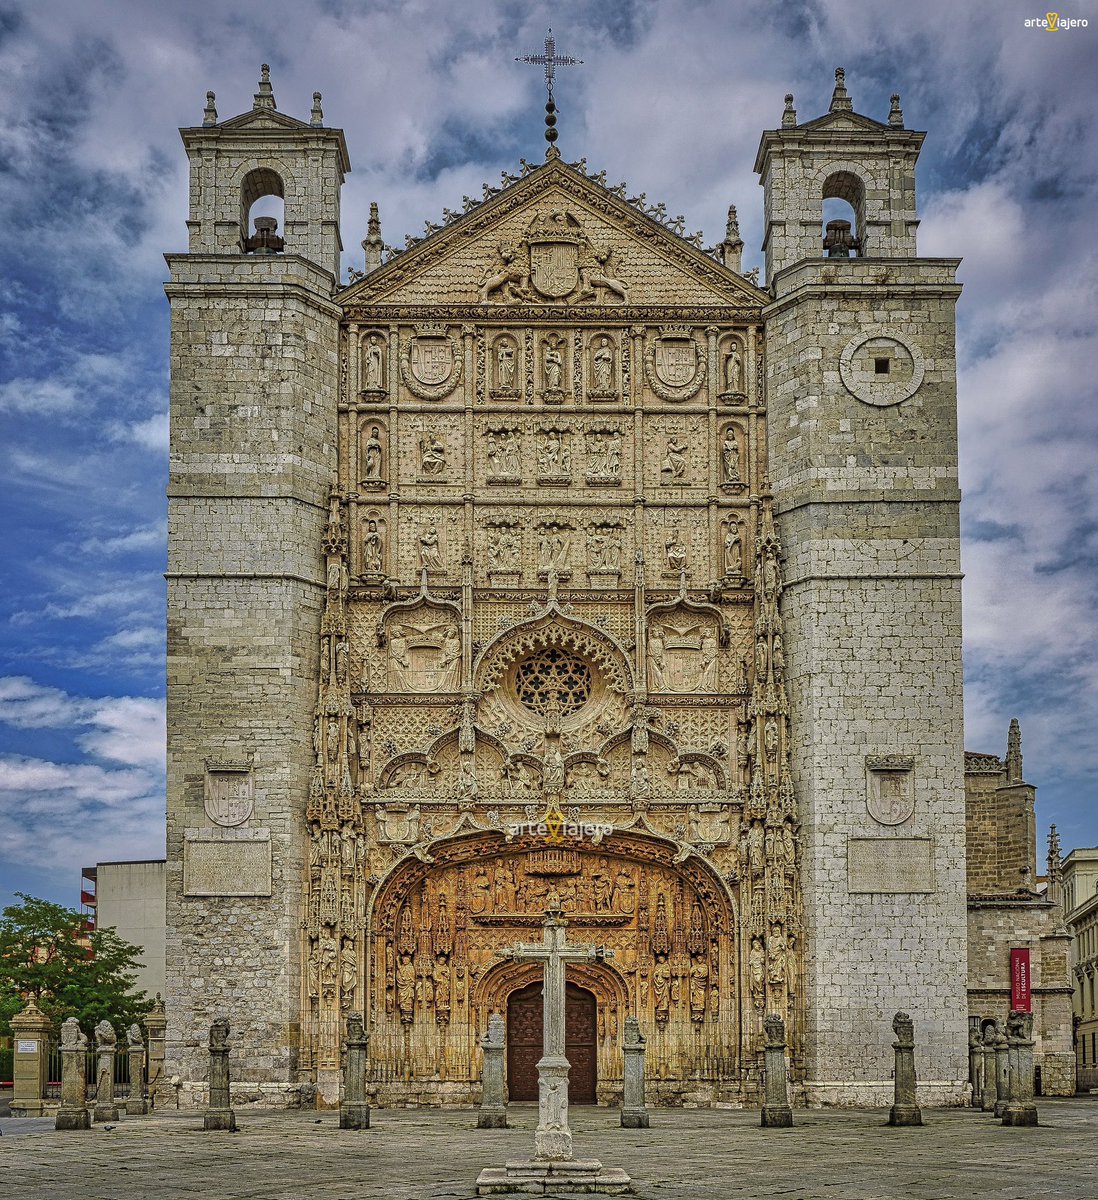 Iglesia de San Pablo (#Valladolid), considerada como una de las máximas cotas del estilo Gótico Isabelino. En ella destaca su espectacular fachada que podemos definir como un auténtico retablo esculpido en piedra #FelizLunes #BuenosDias